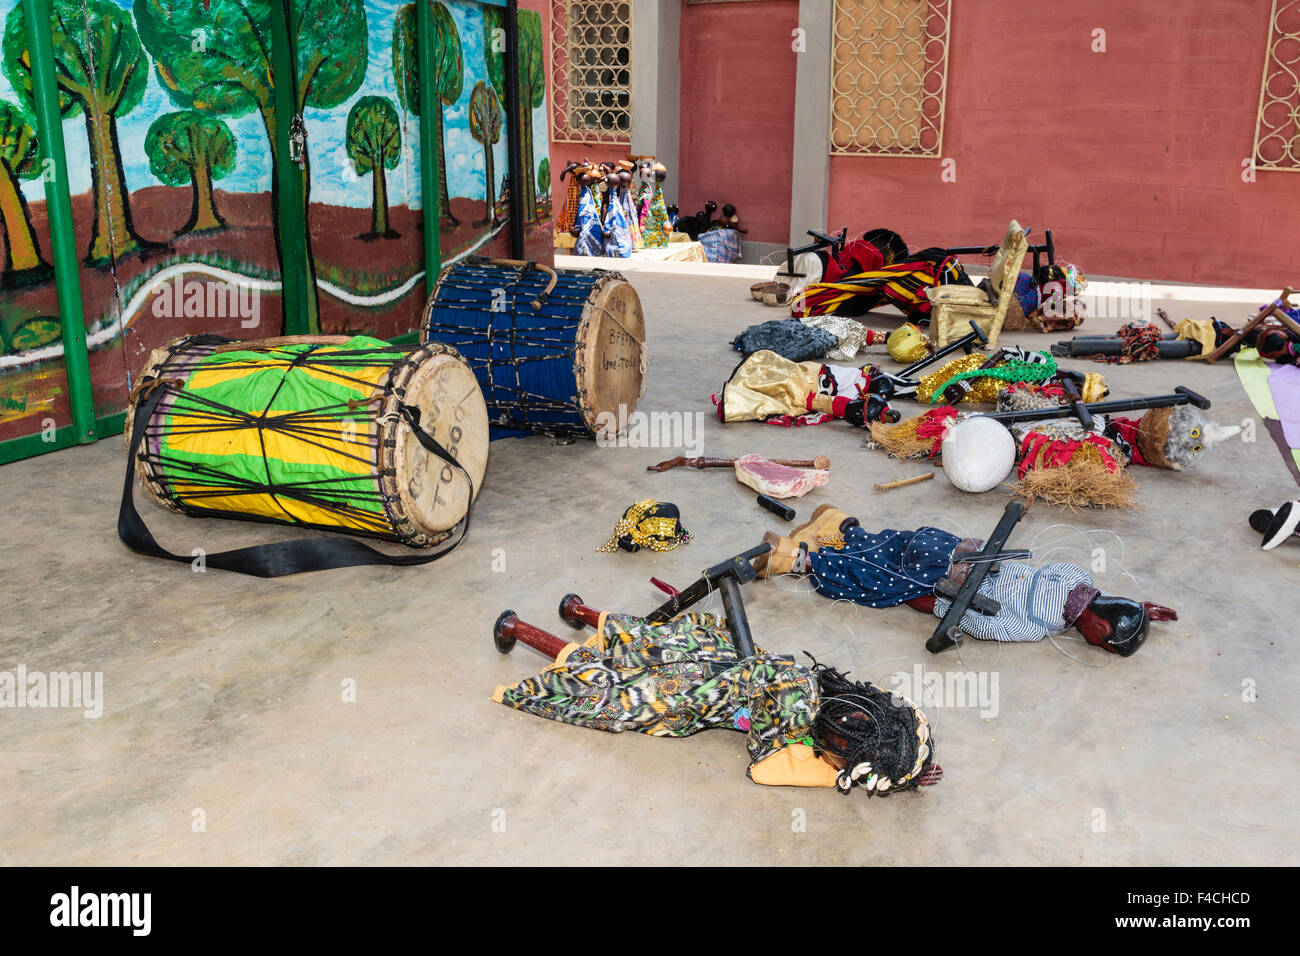 Afrika, Westafrika, Togo, Lome. Trommeln und Marionetten vor einer Aufführung Marionetten du Togo. Stockfoto